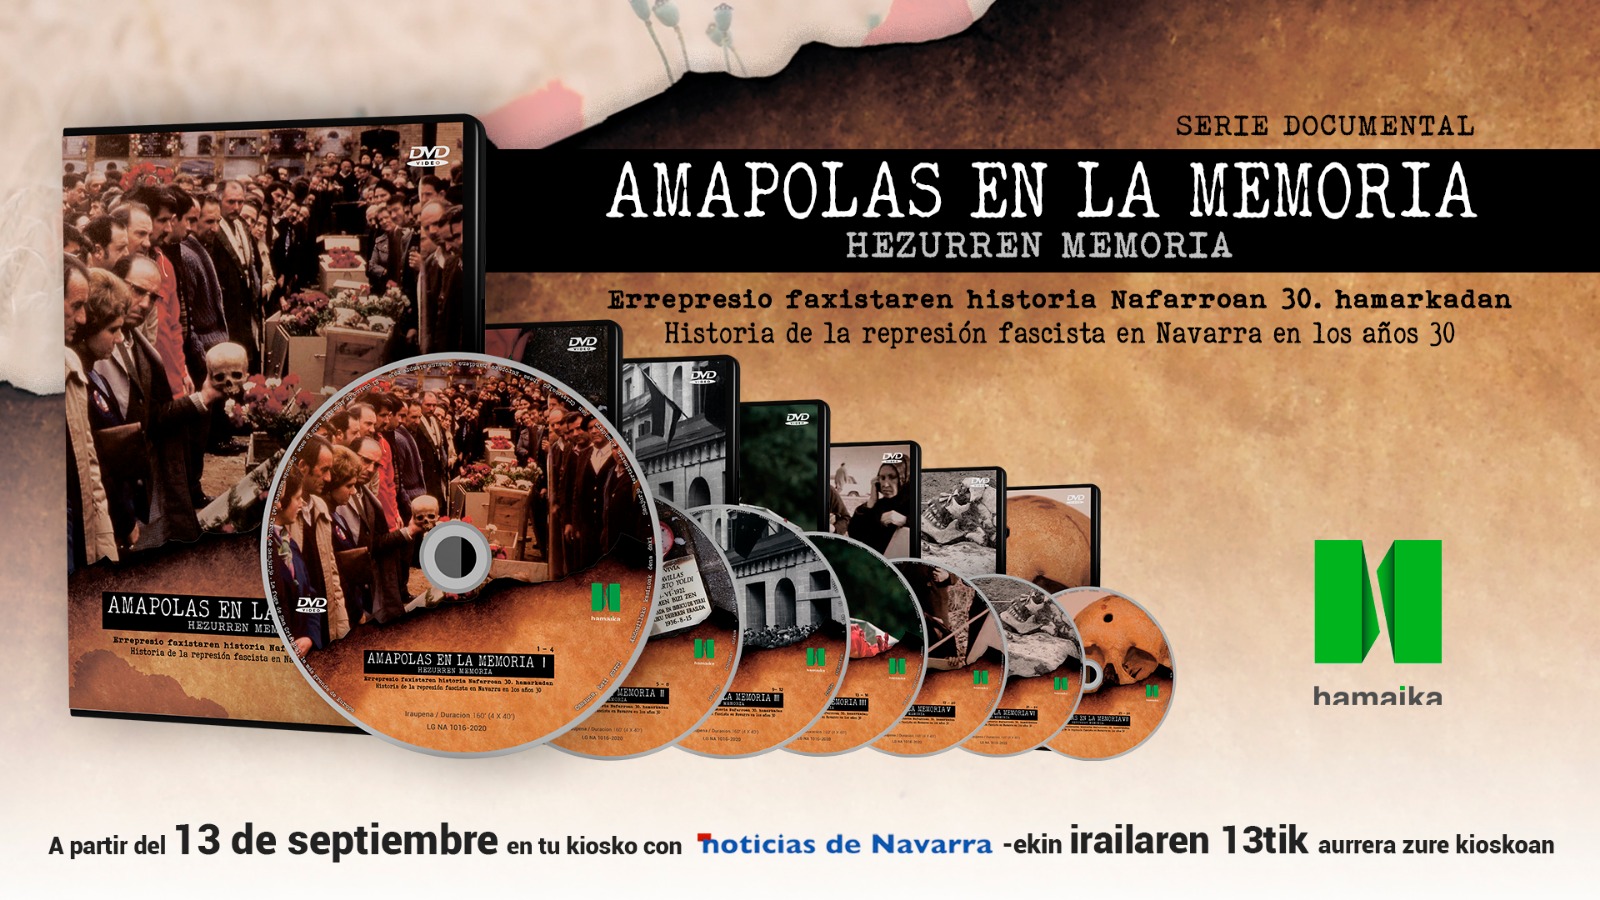 Serie Documental Amapolas en la Memoria